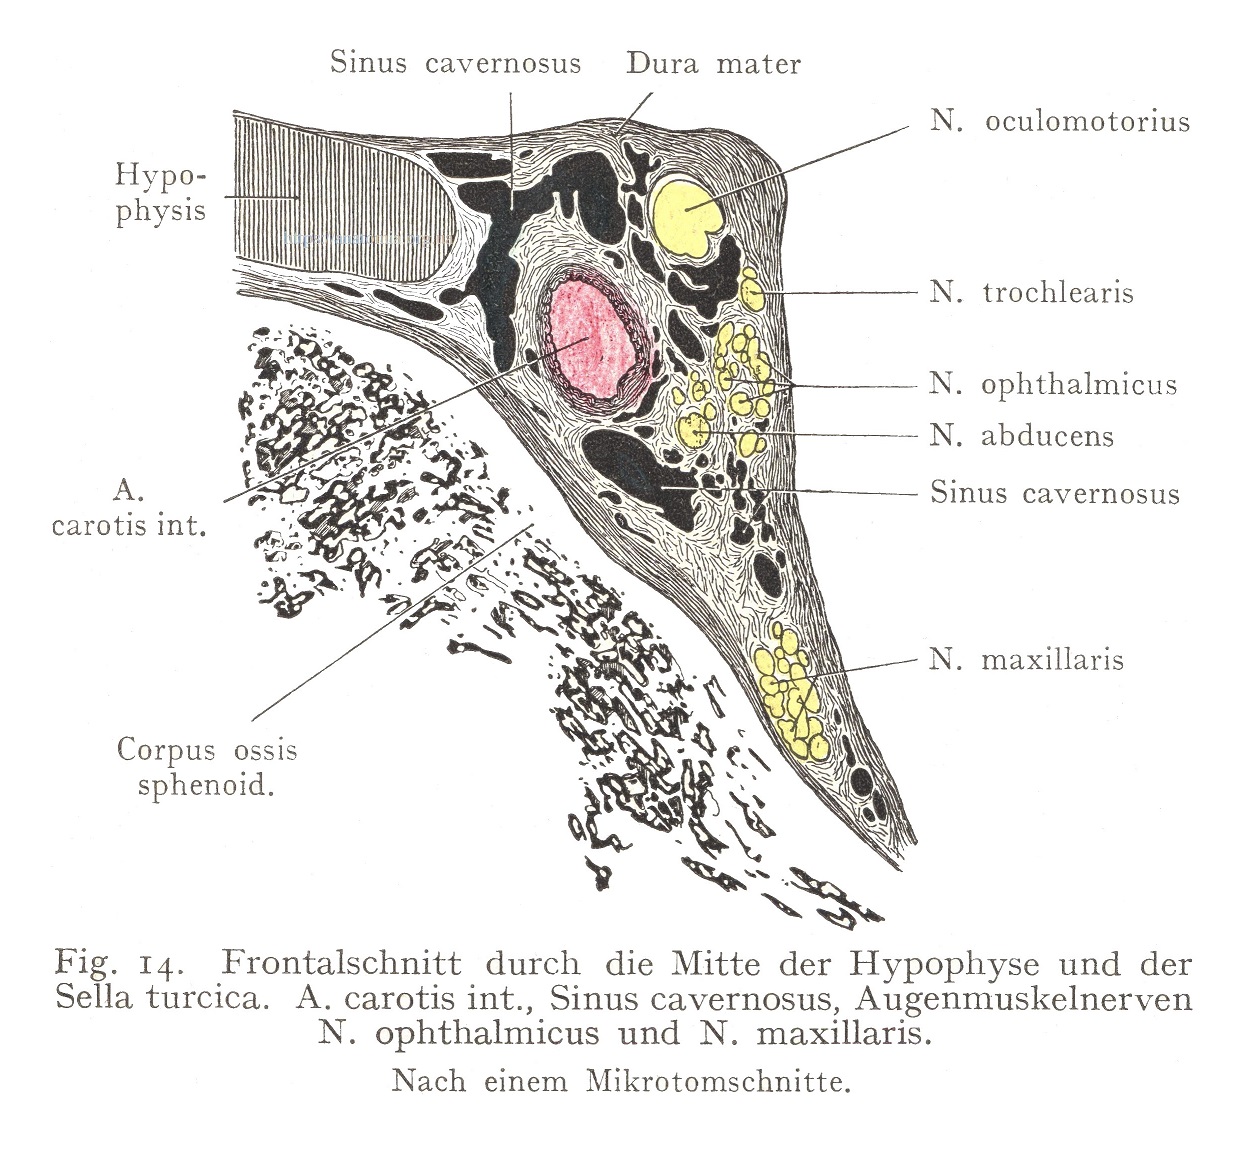 Frontalschnitt durch die Mitte der Hypophyse und der Sella turcica.